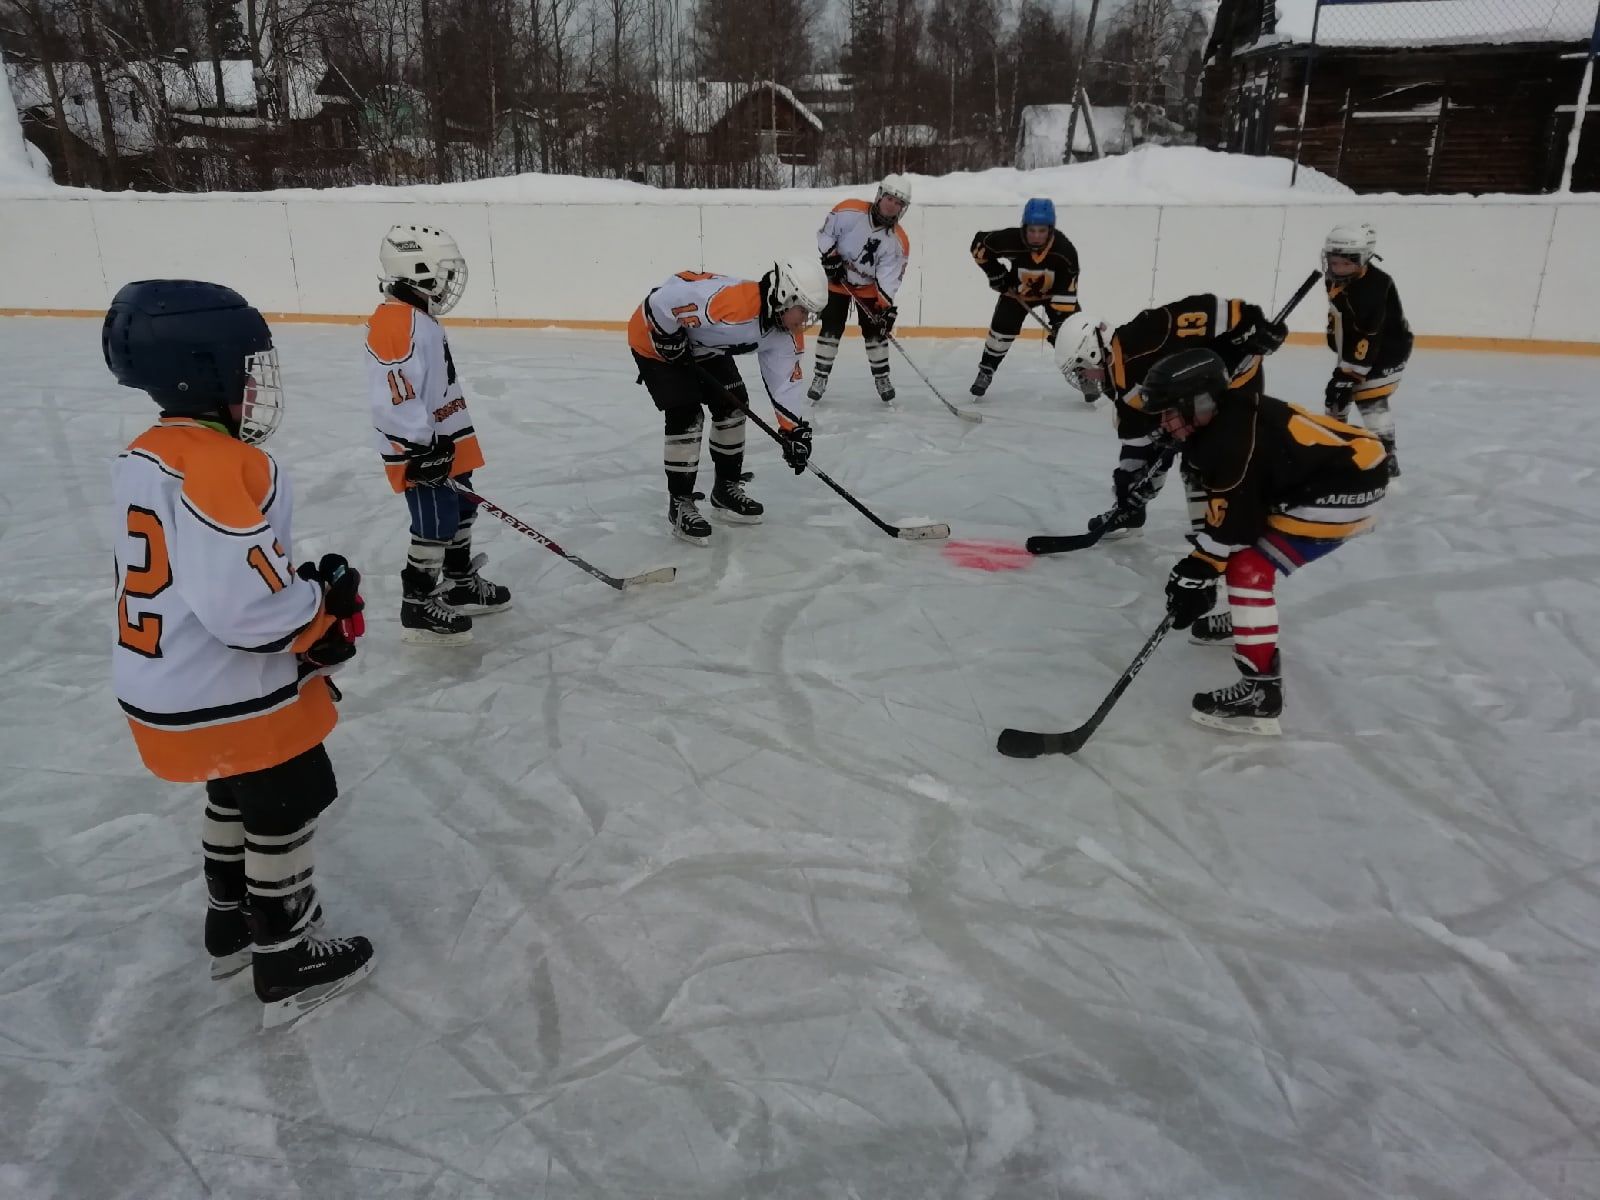 Nyt Kalevalassa jääkiekkoa harrastaa pysyvästi noin 20 poikaa ja neljä tyttöä. Ydinjoukkona on 7—14-vuotiaat. Kuva: Kalevalan kontiet -joukkueen VKontakte-sivu